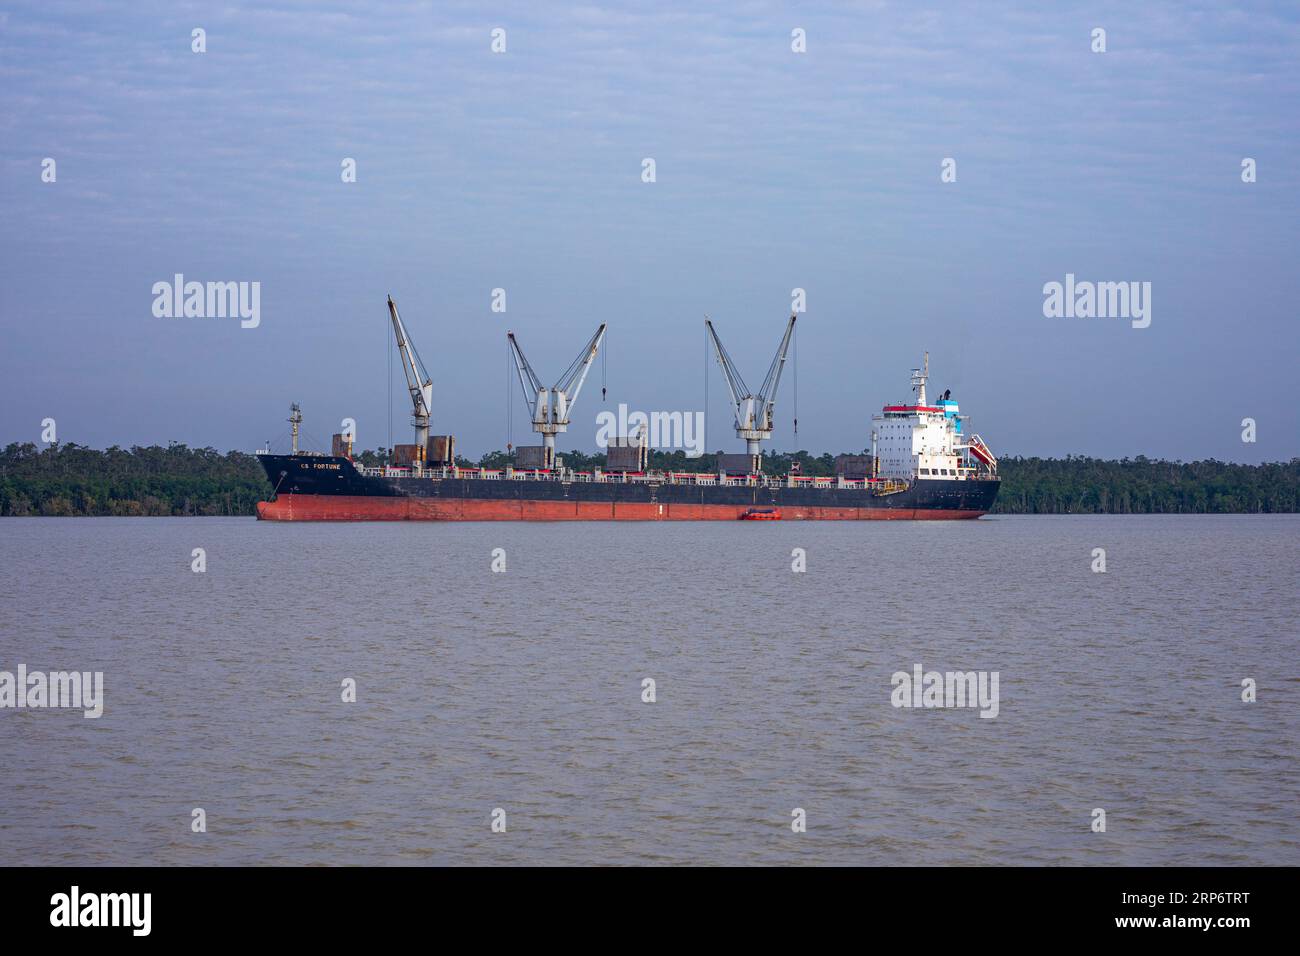 Ein ausländisches Schiff, das am Pashur River an der äußeren Ankerstelle des Hafens von Mongla ankerte. Dies ist der zweitgrößte Seehafen in Bangladesch. Bagerhat, Bang Stockfoto